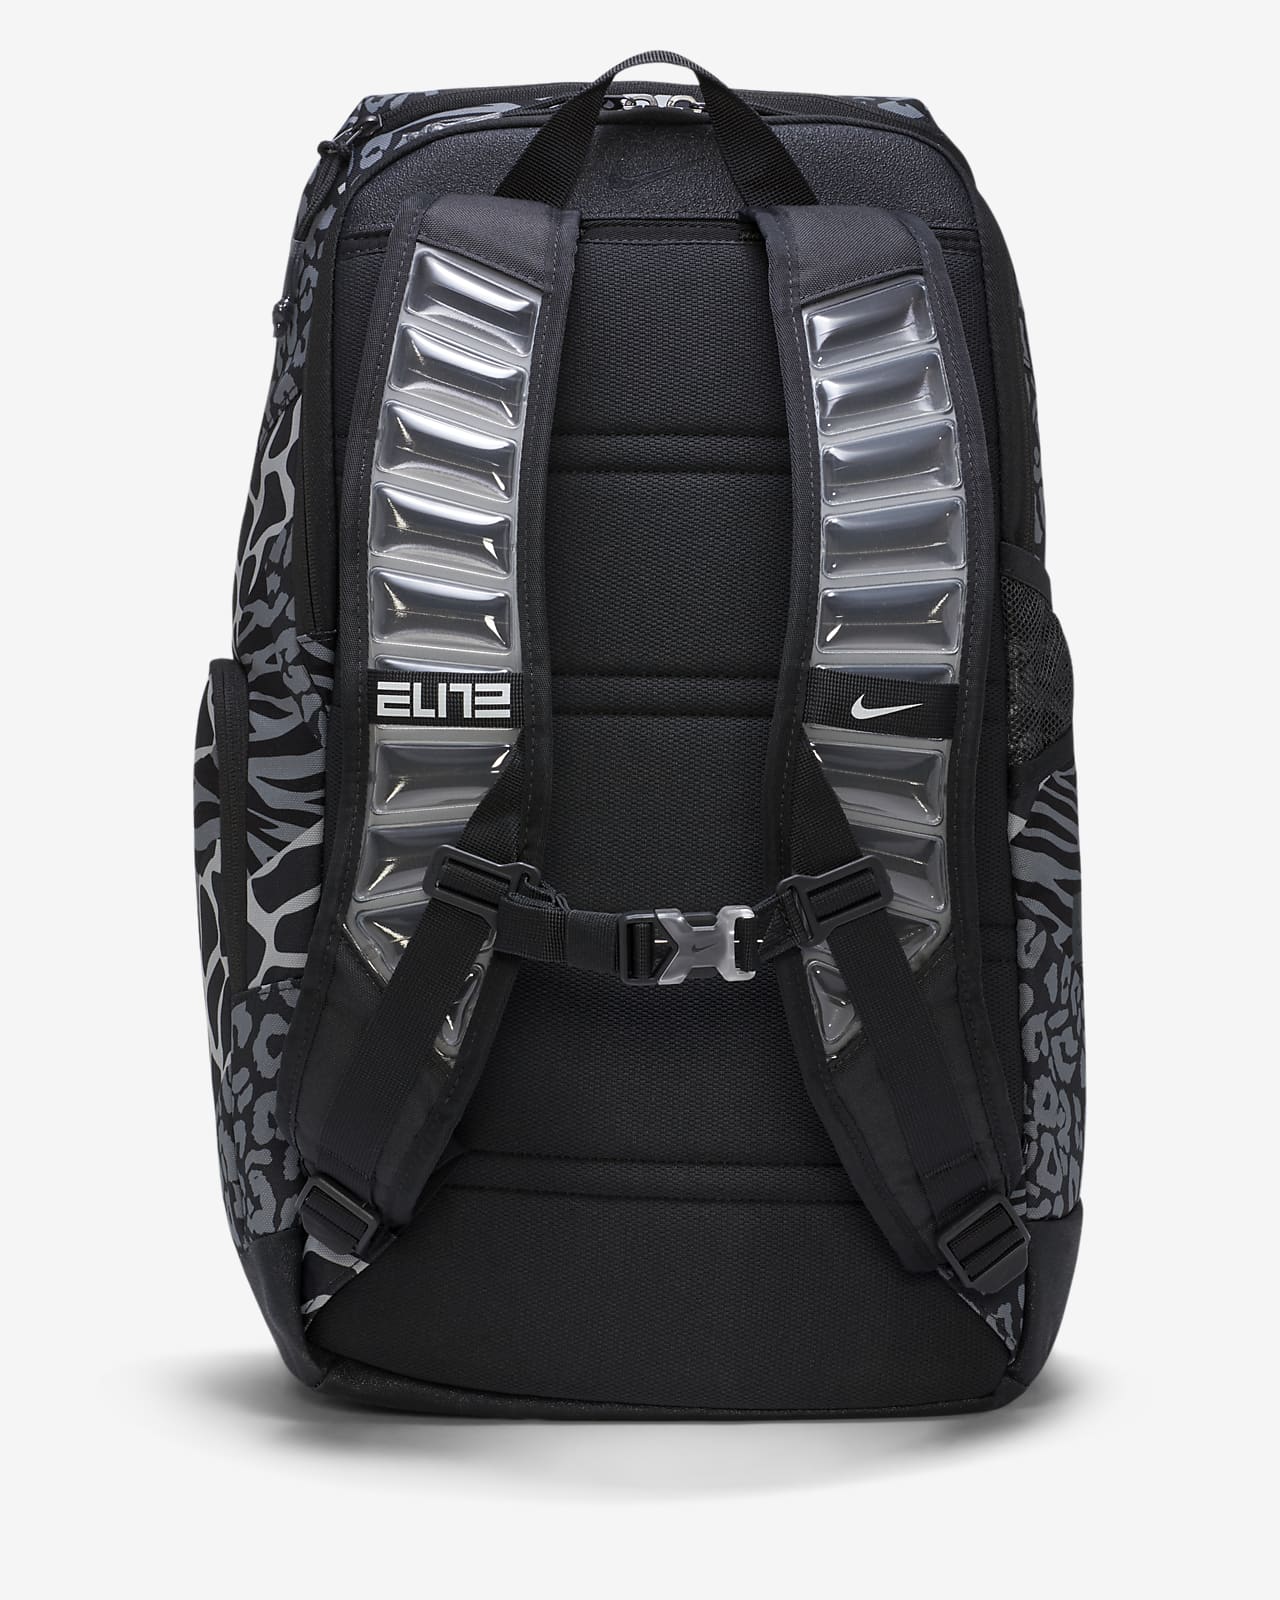 nike hoops elite pro backpack canada